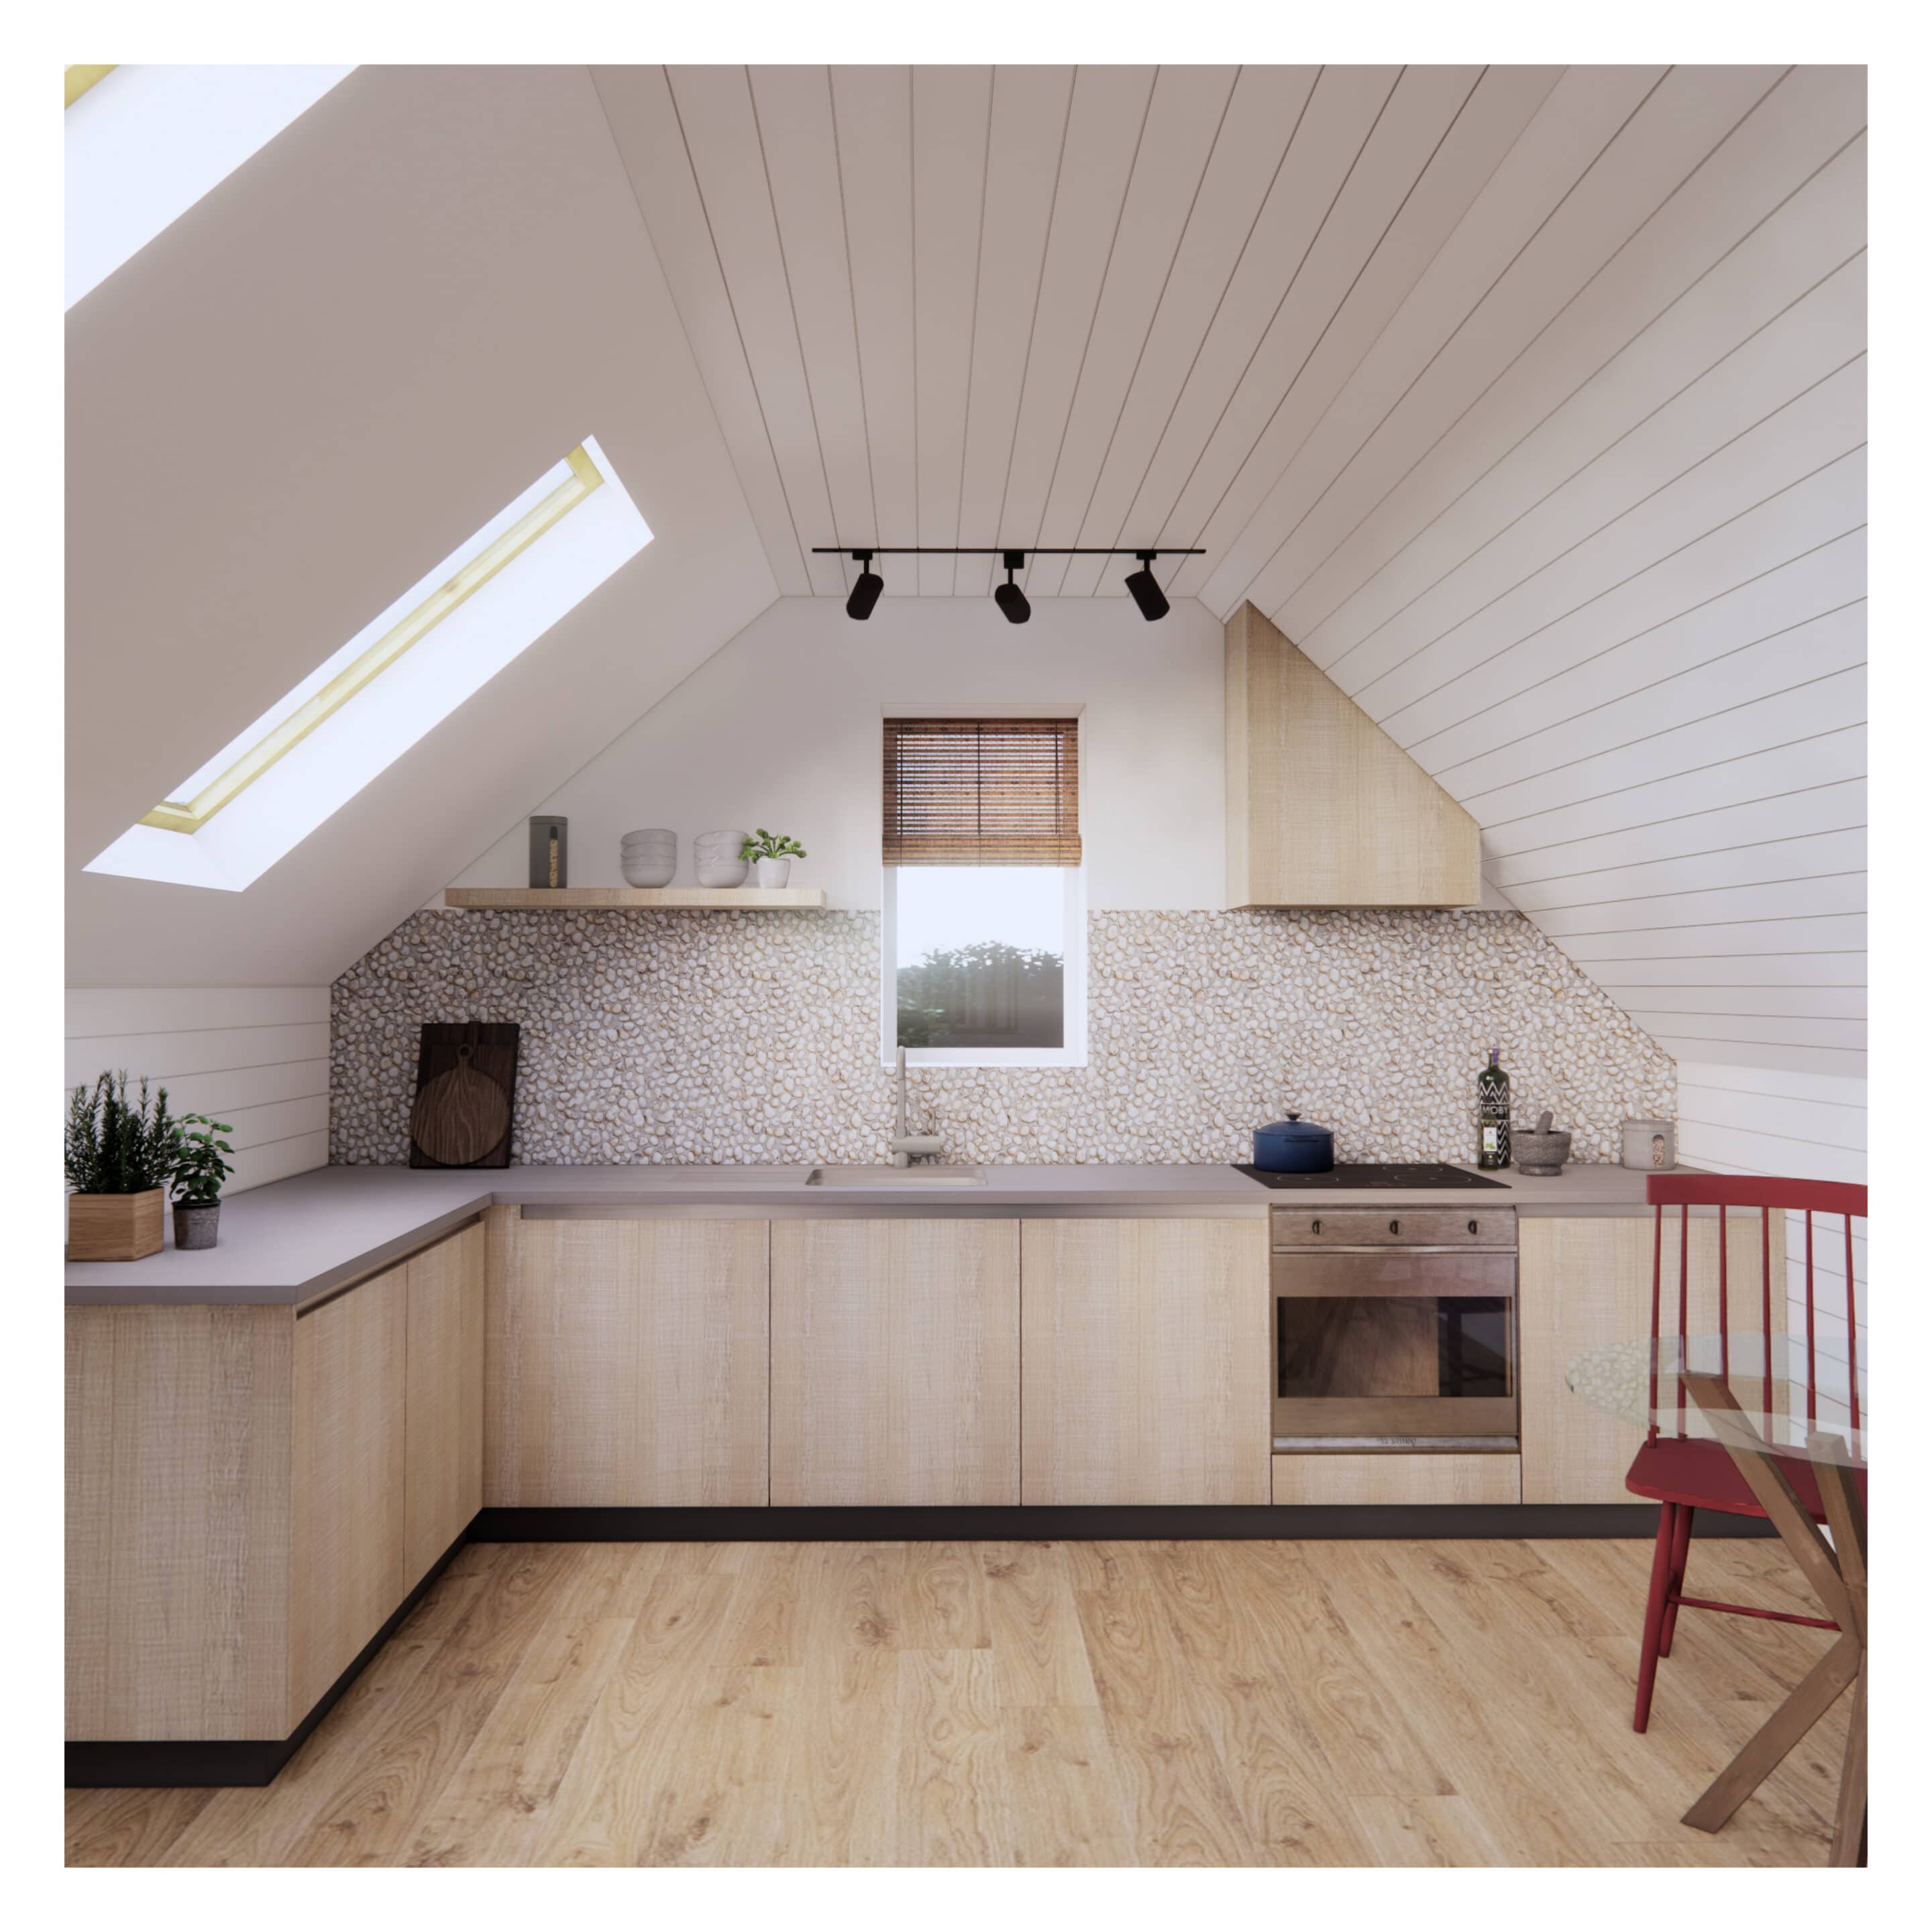 Loft Studio Kitchen Design